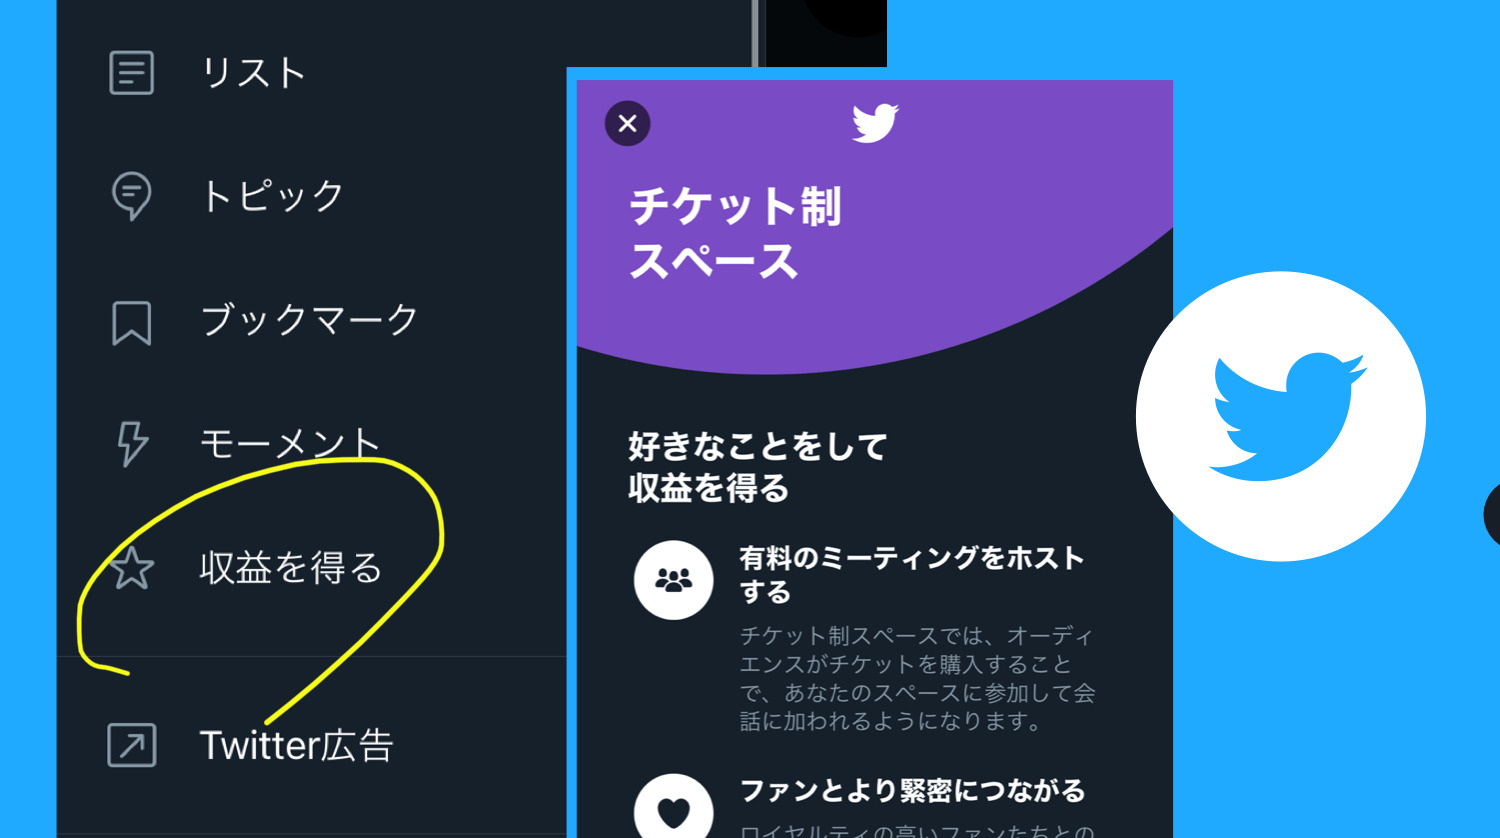 ツイッターに 収益を得る ボタン 意味は サブスク スーパーフォロー と チケット制 有料スペース 公開開始 Twitterビジネス向け新機能 アップデート 最新ニュース 21年6月 Koukichi T